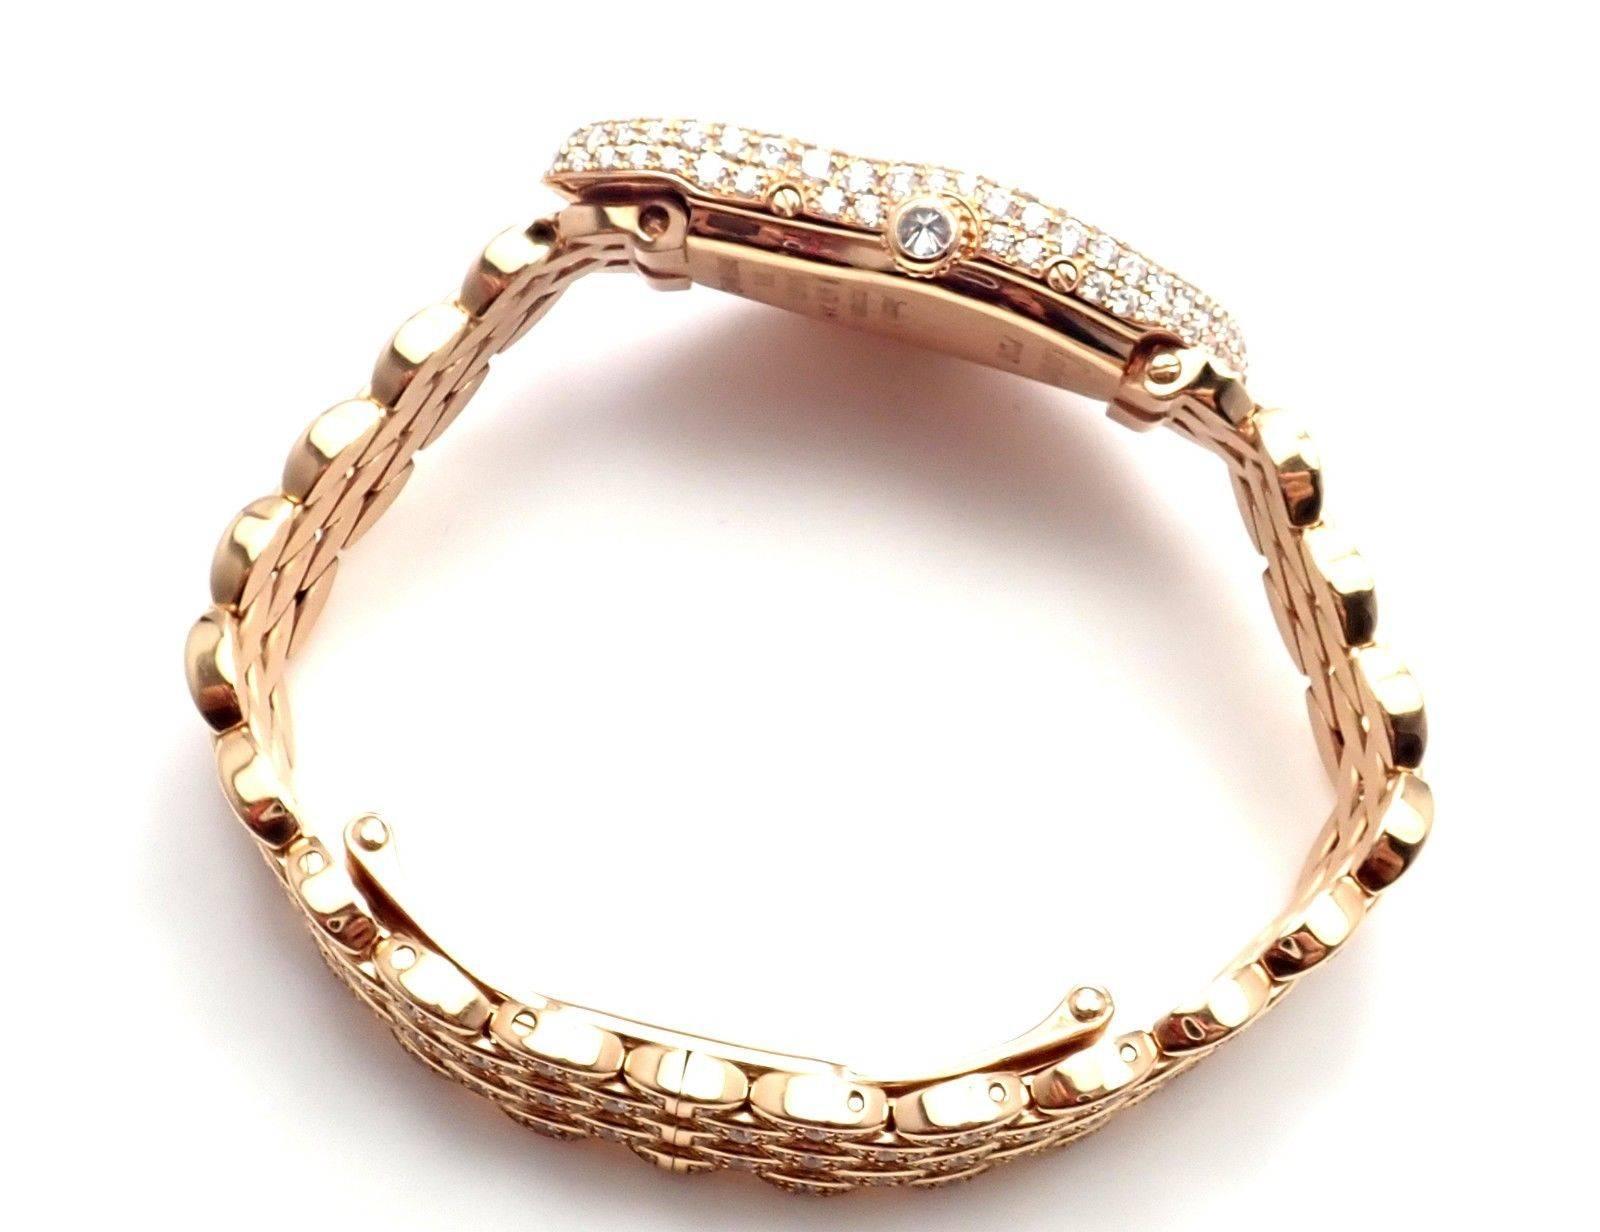 Montre-bracelet Crash Cartier en or rose et diamants édition limitée Ref HP100653 2